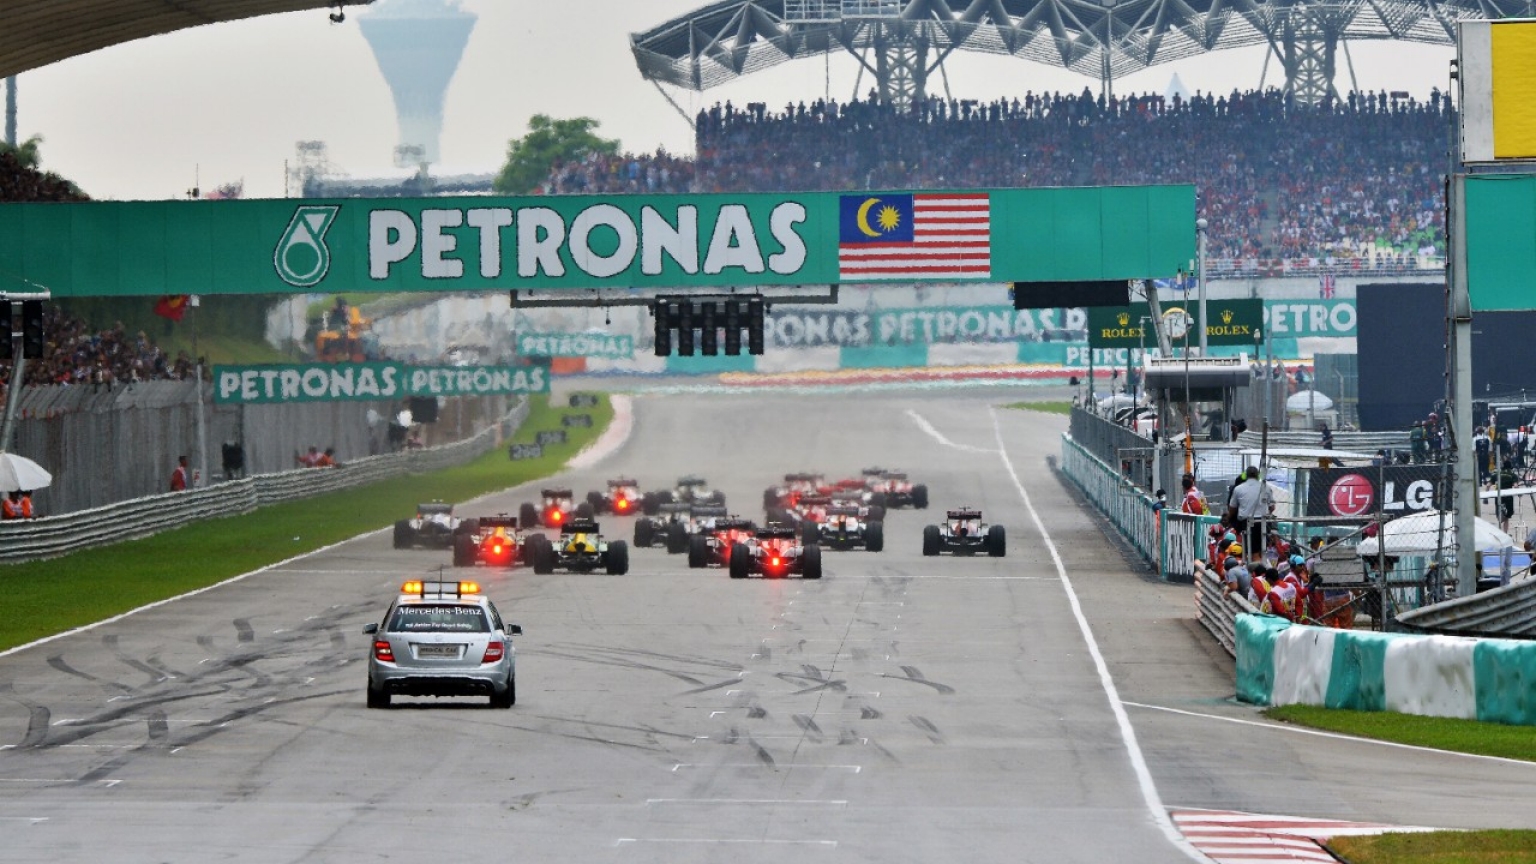 Malaysia chính thức chấm dứt hợp đồng tổ chức F1 kể từ năm 2018